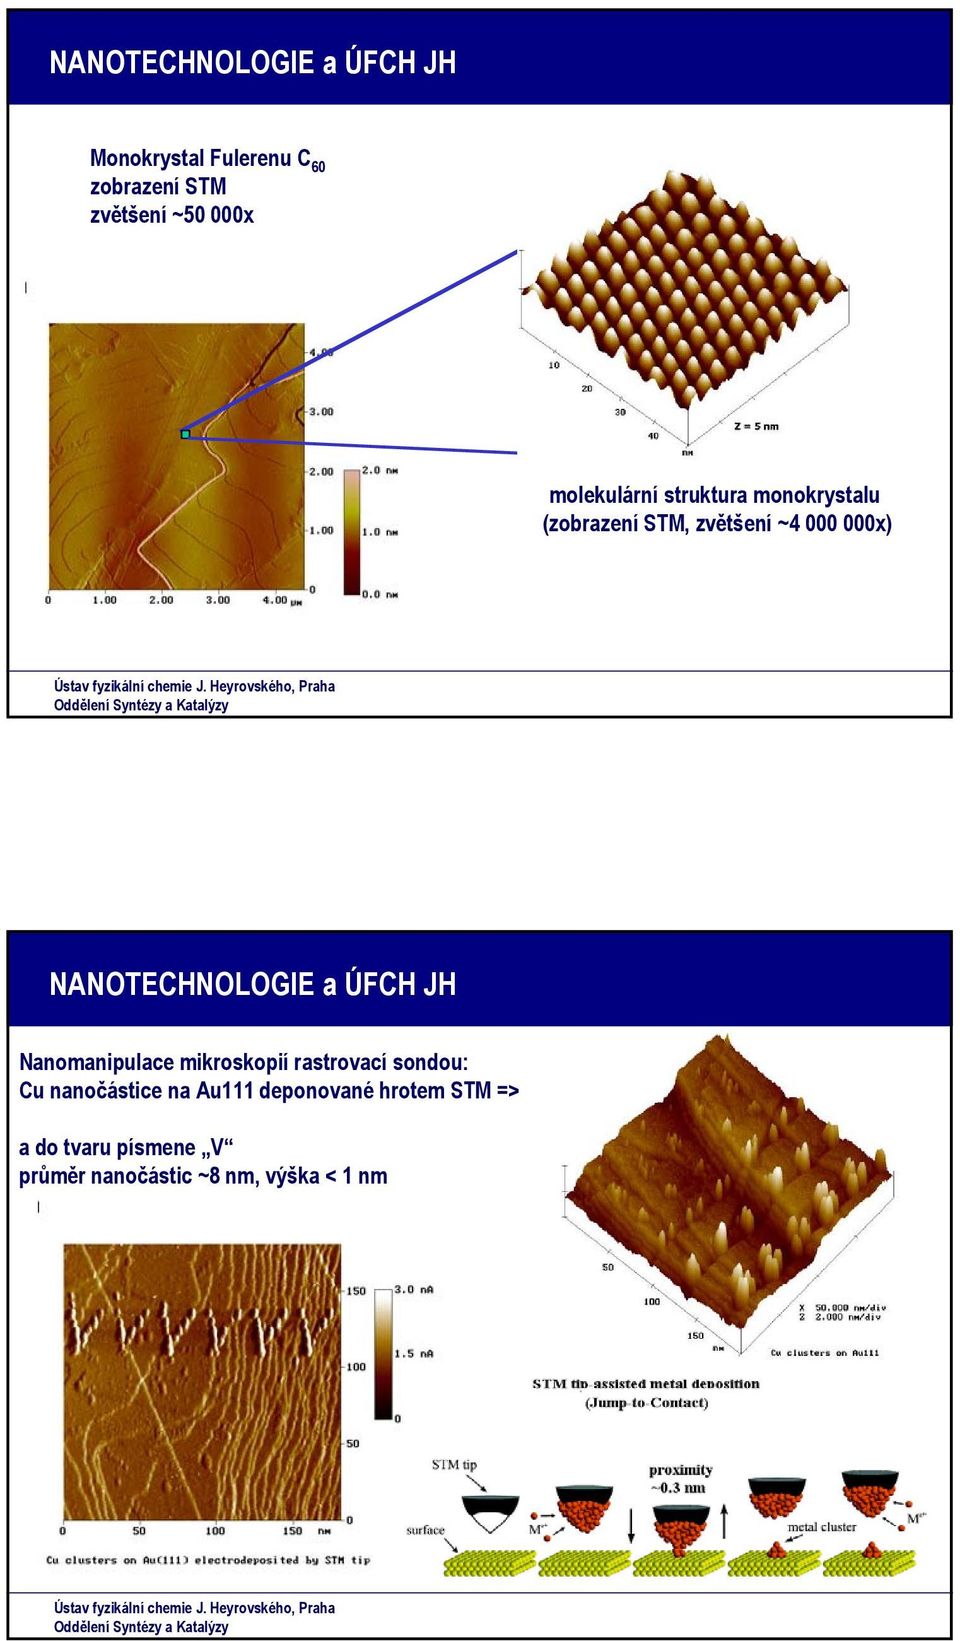 NANTECHNLGIE a ÚFCH JH Nanomanipulace mikroskopií rastrovací sondou: Cu